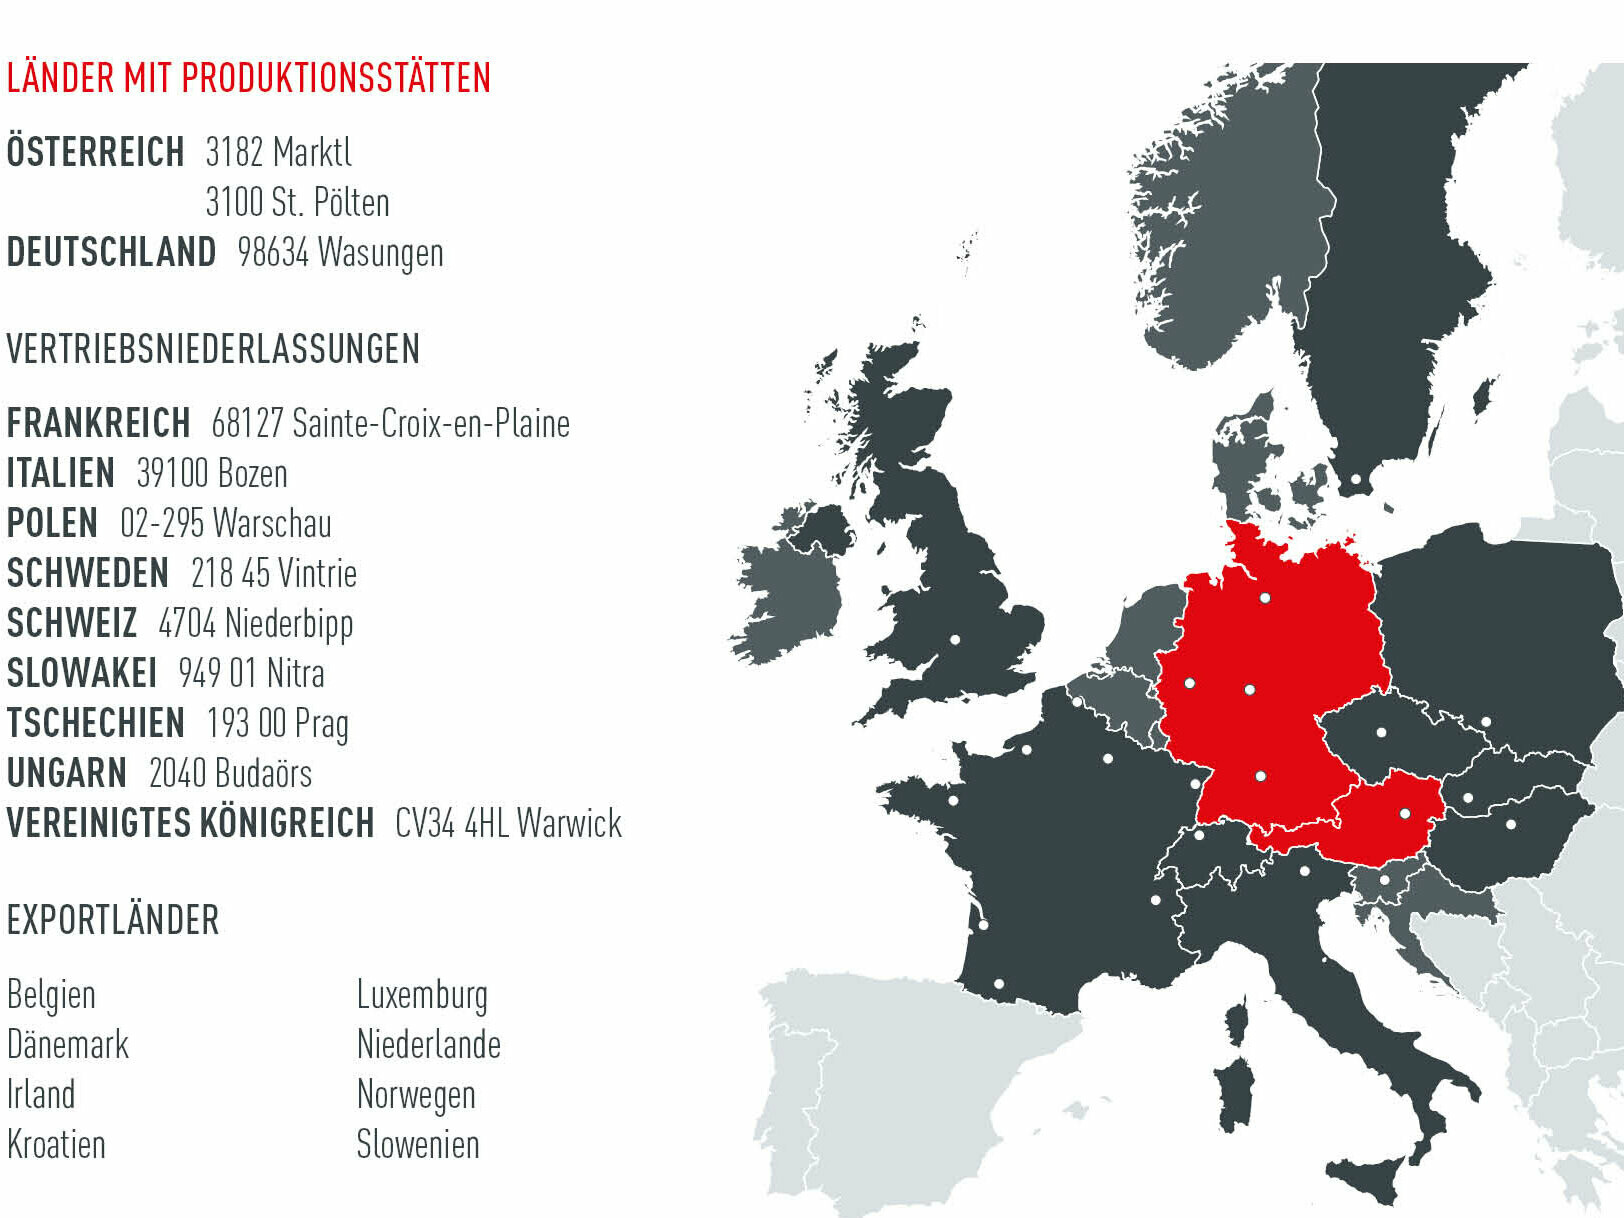 Legende: Die Europakarte zeigt die PREFA Produktionsstätten, Ländern, Vertriebsniederlassungen und Schulungszentren